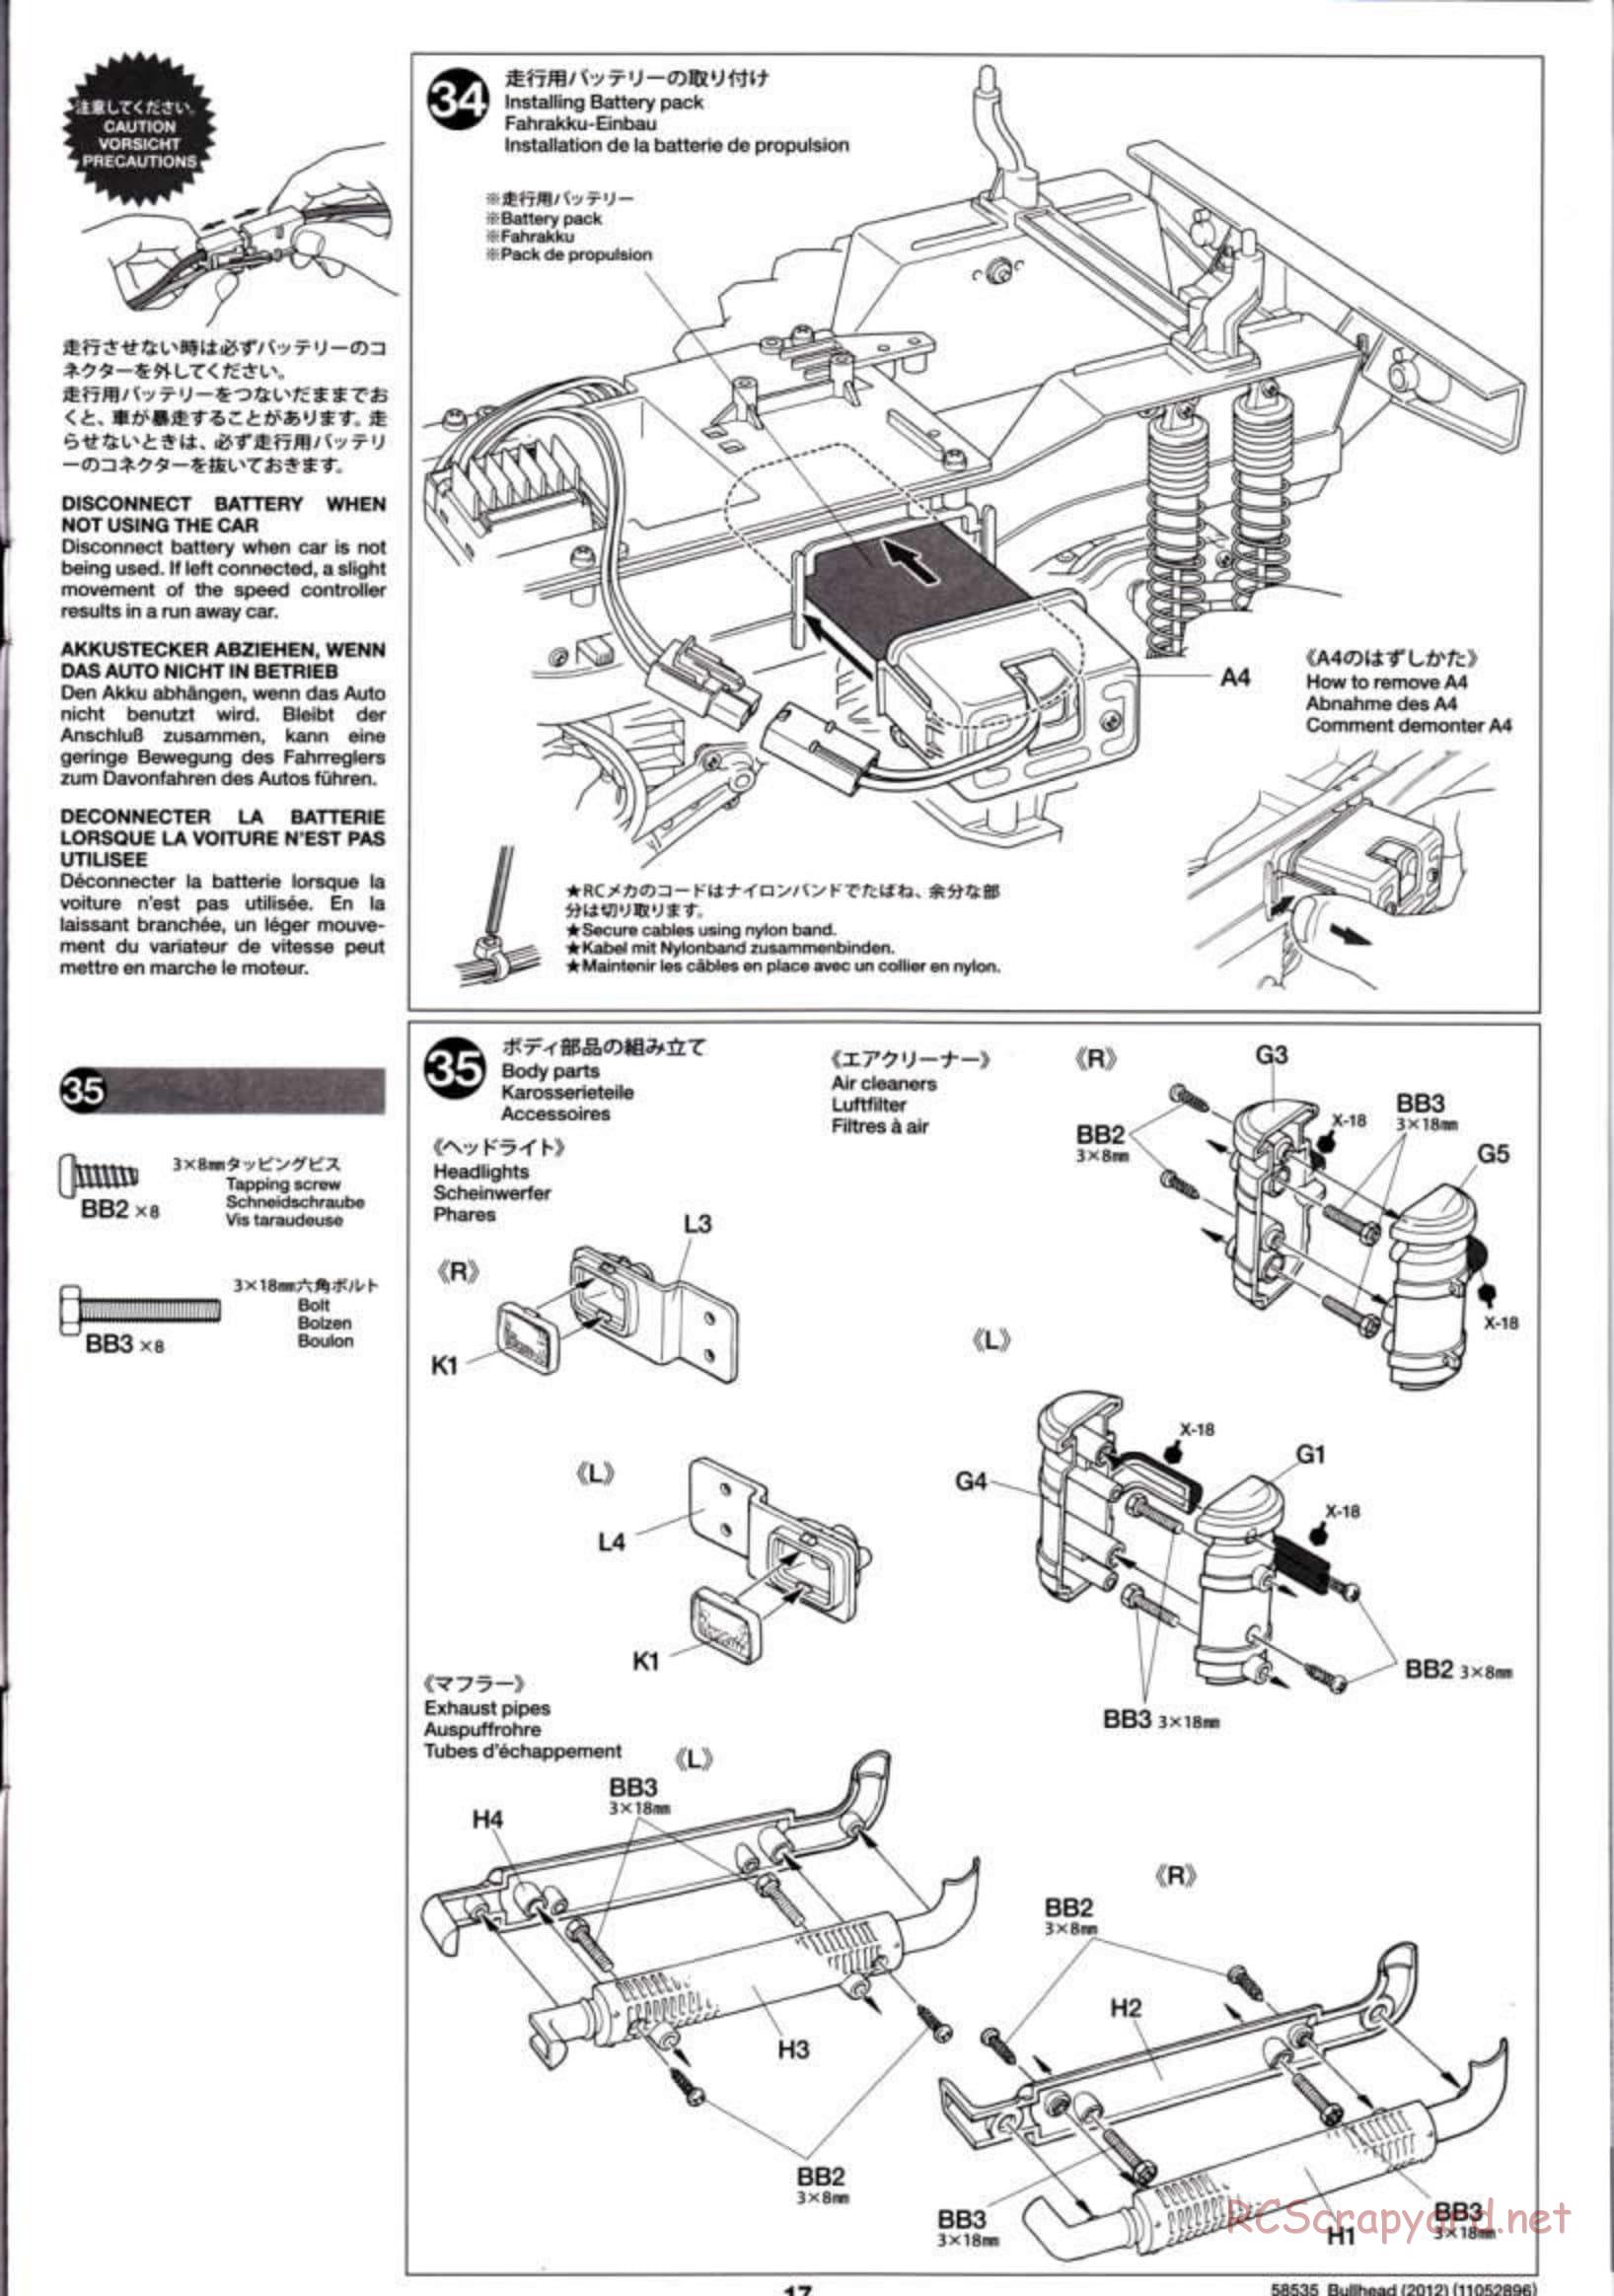 Tamiya - Bullhead 2012 - CB Chassis - Manual - Page 17